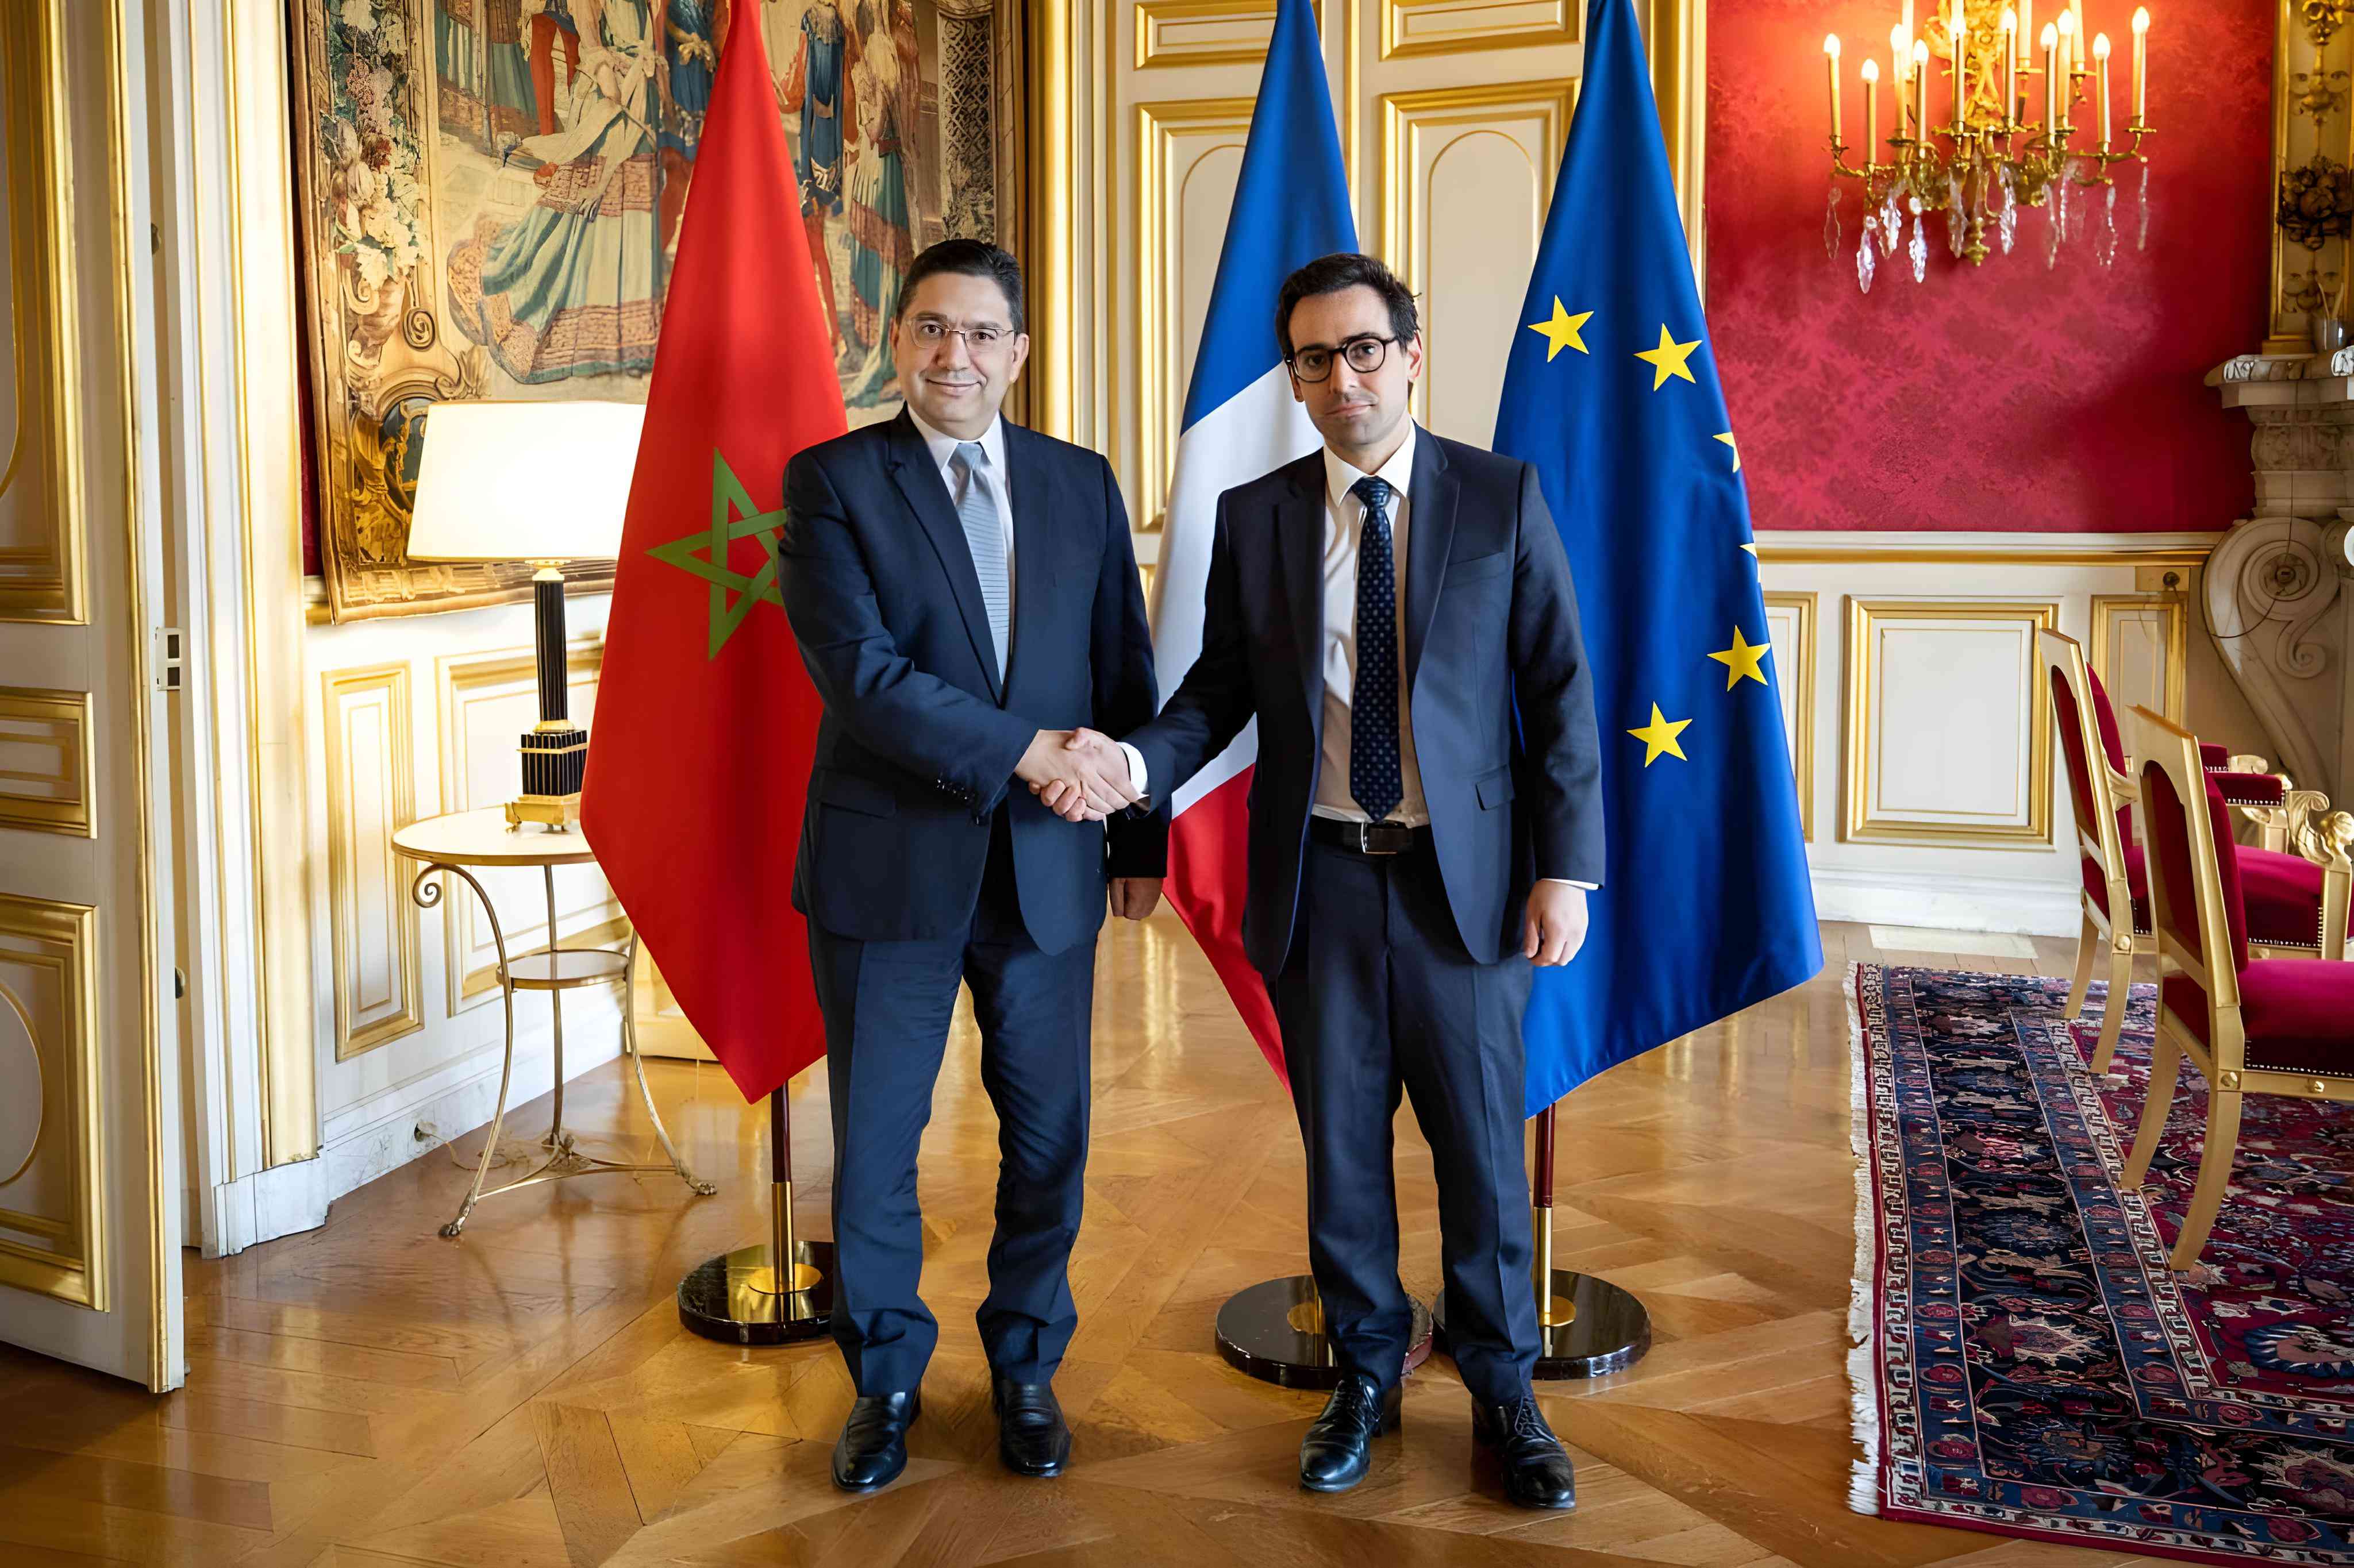 وزير الخارجية الفرنسي يؤكد امام نظيره المغربي ان باريس والرباط تجمعهما علاقة فريدة  